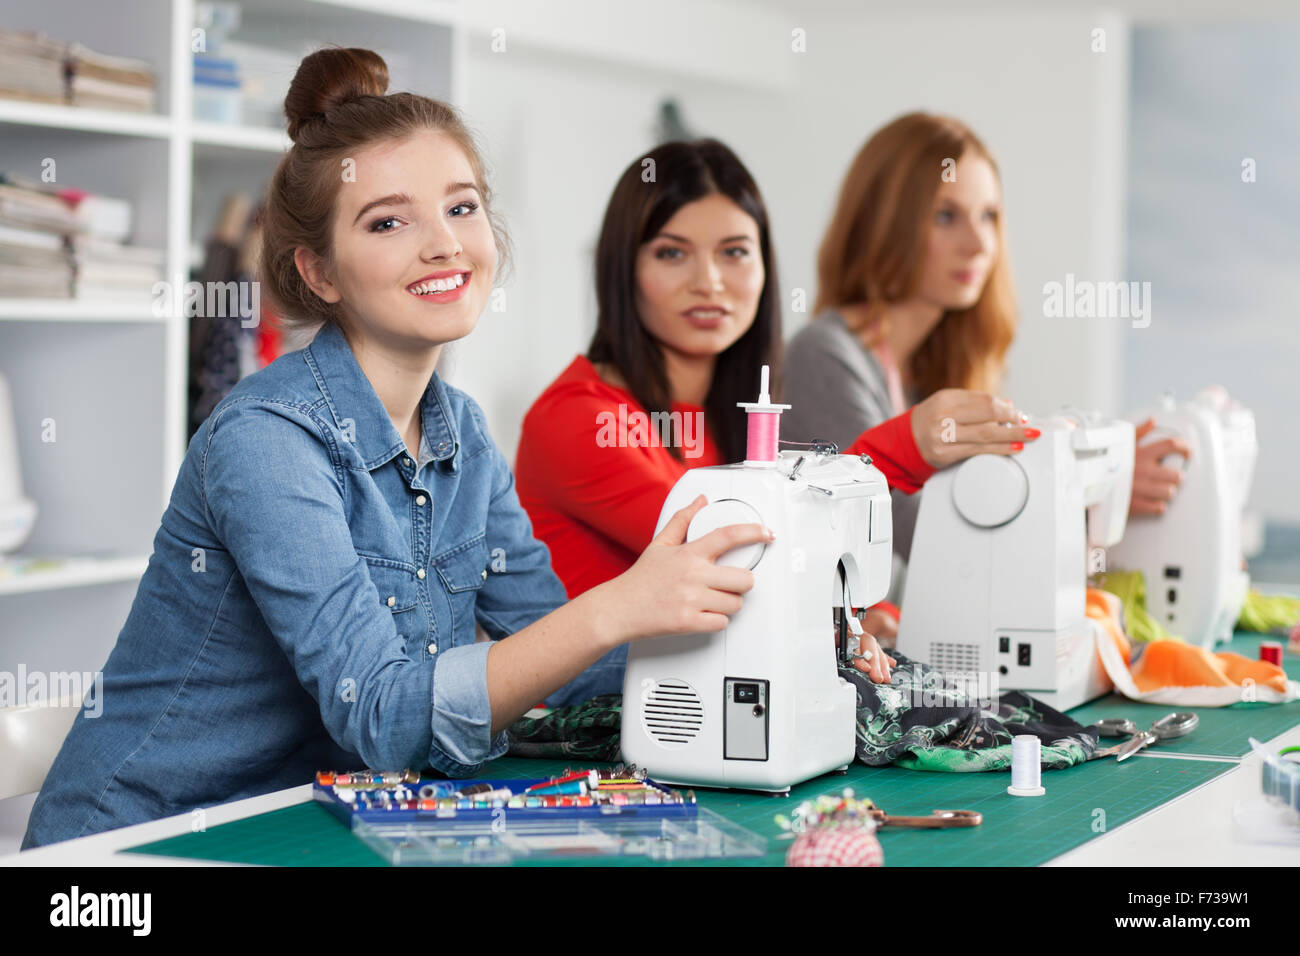 Les femmes dans un atelier de couture Banque D'Images